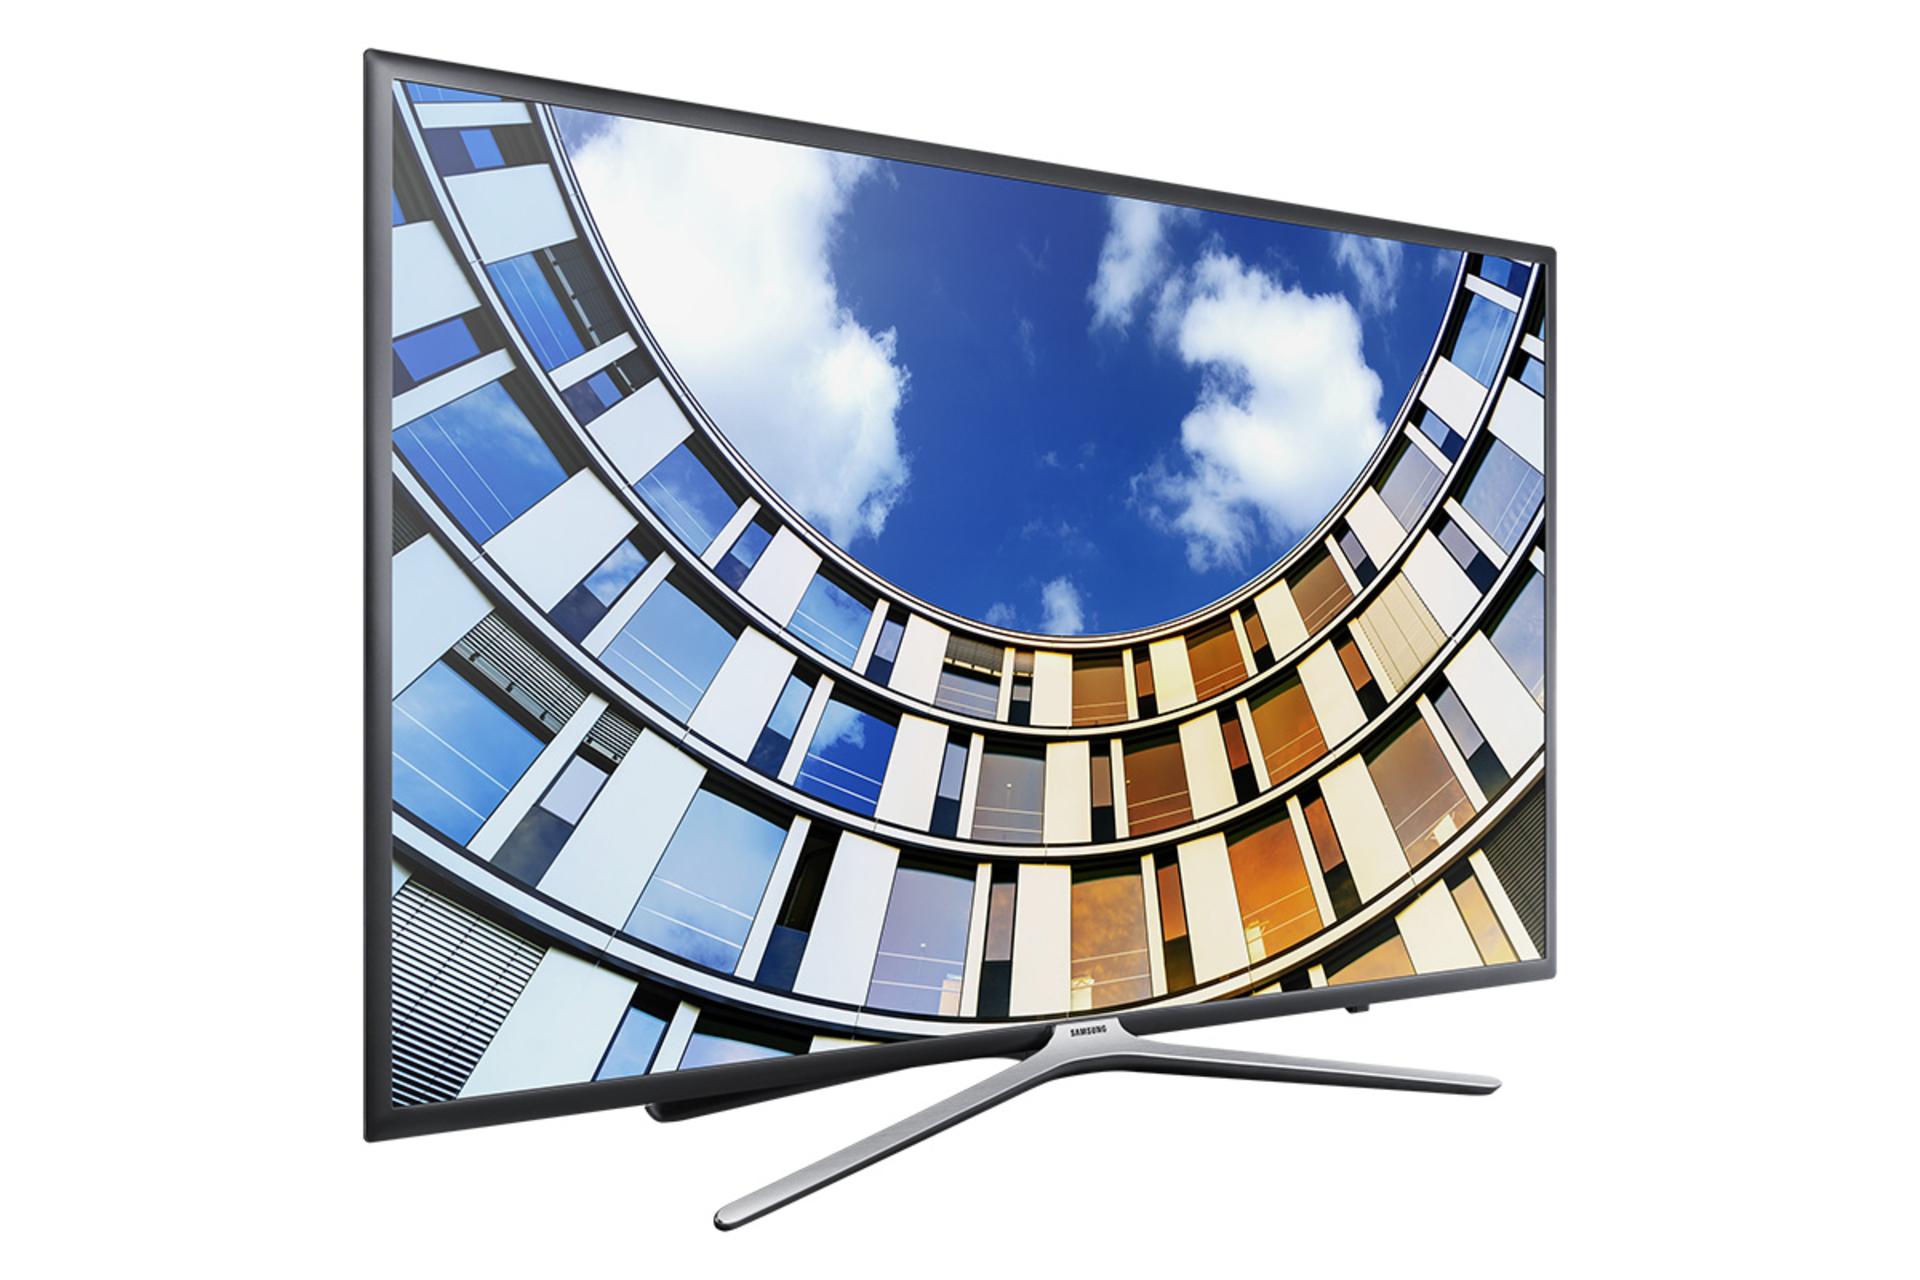 نمای نیمرخ تلویزیون سامسونگ N6900 مدل 49 اینچ با صفحه روشن